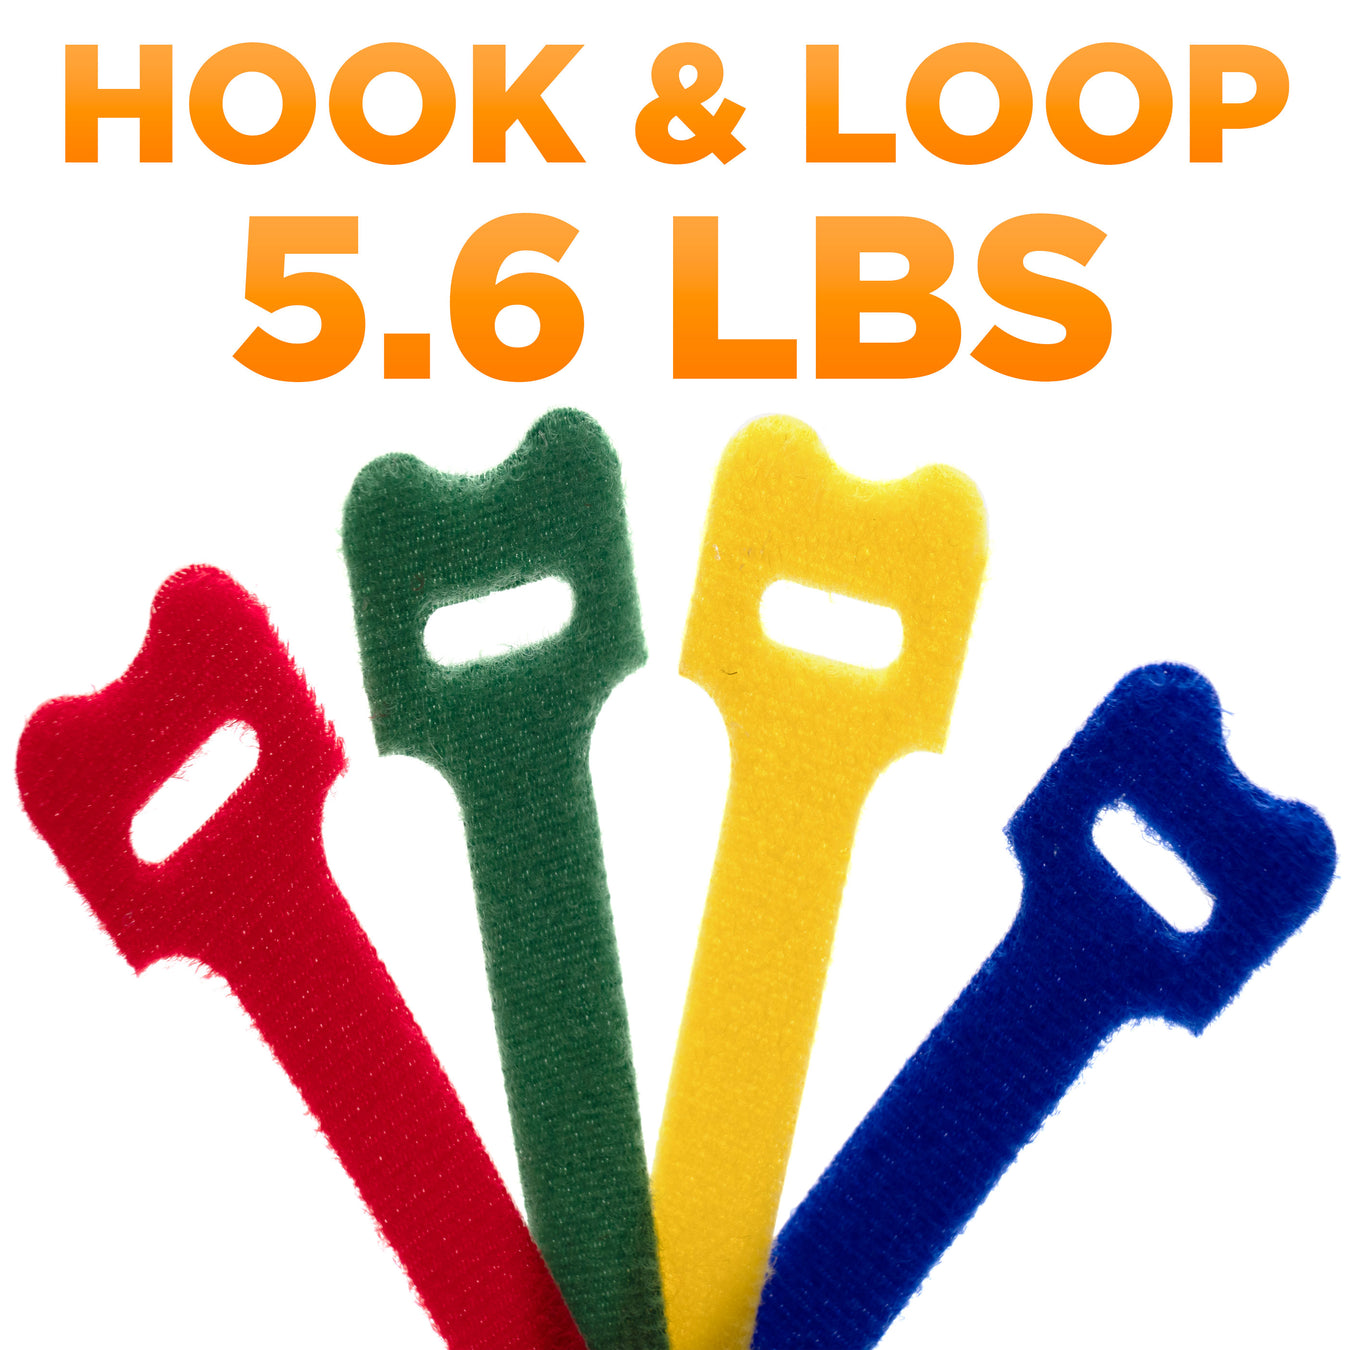 Hook and Loop Ties